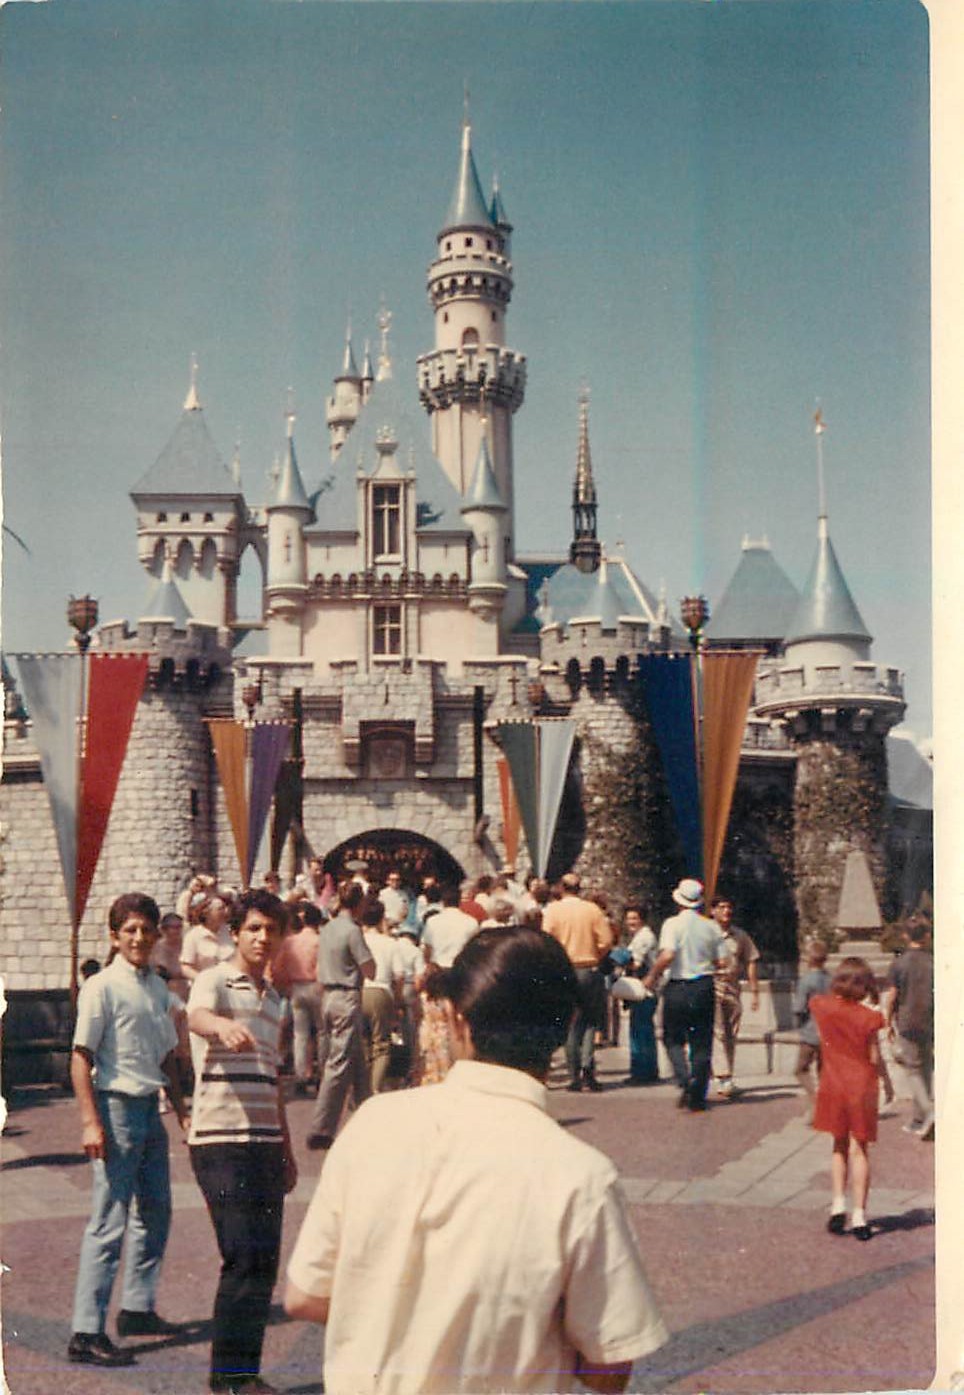 Found Disneyland Photos From 1972